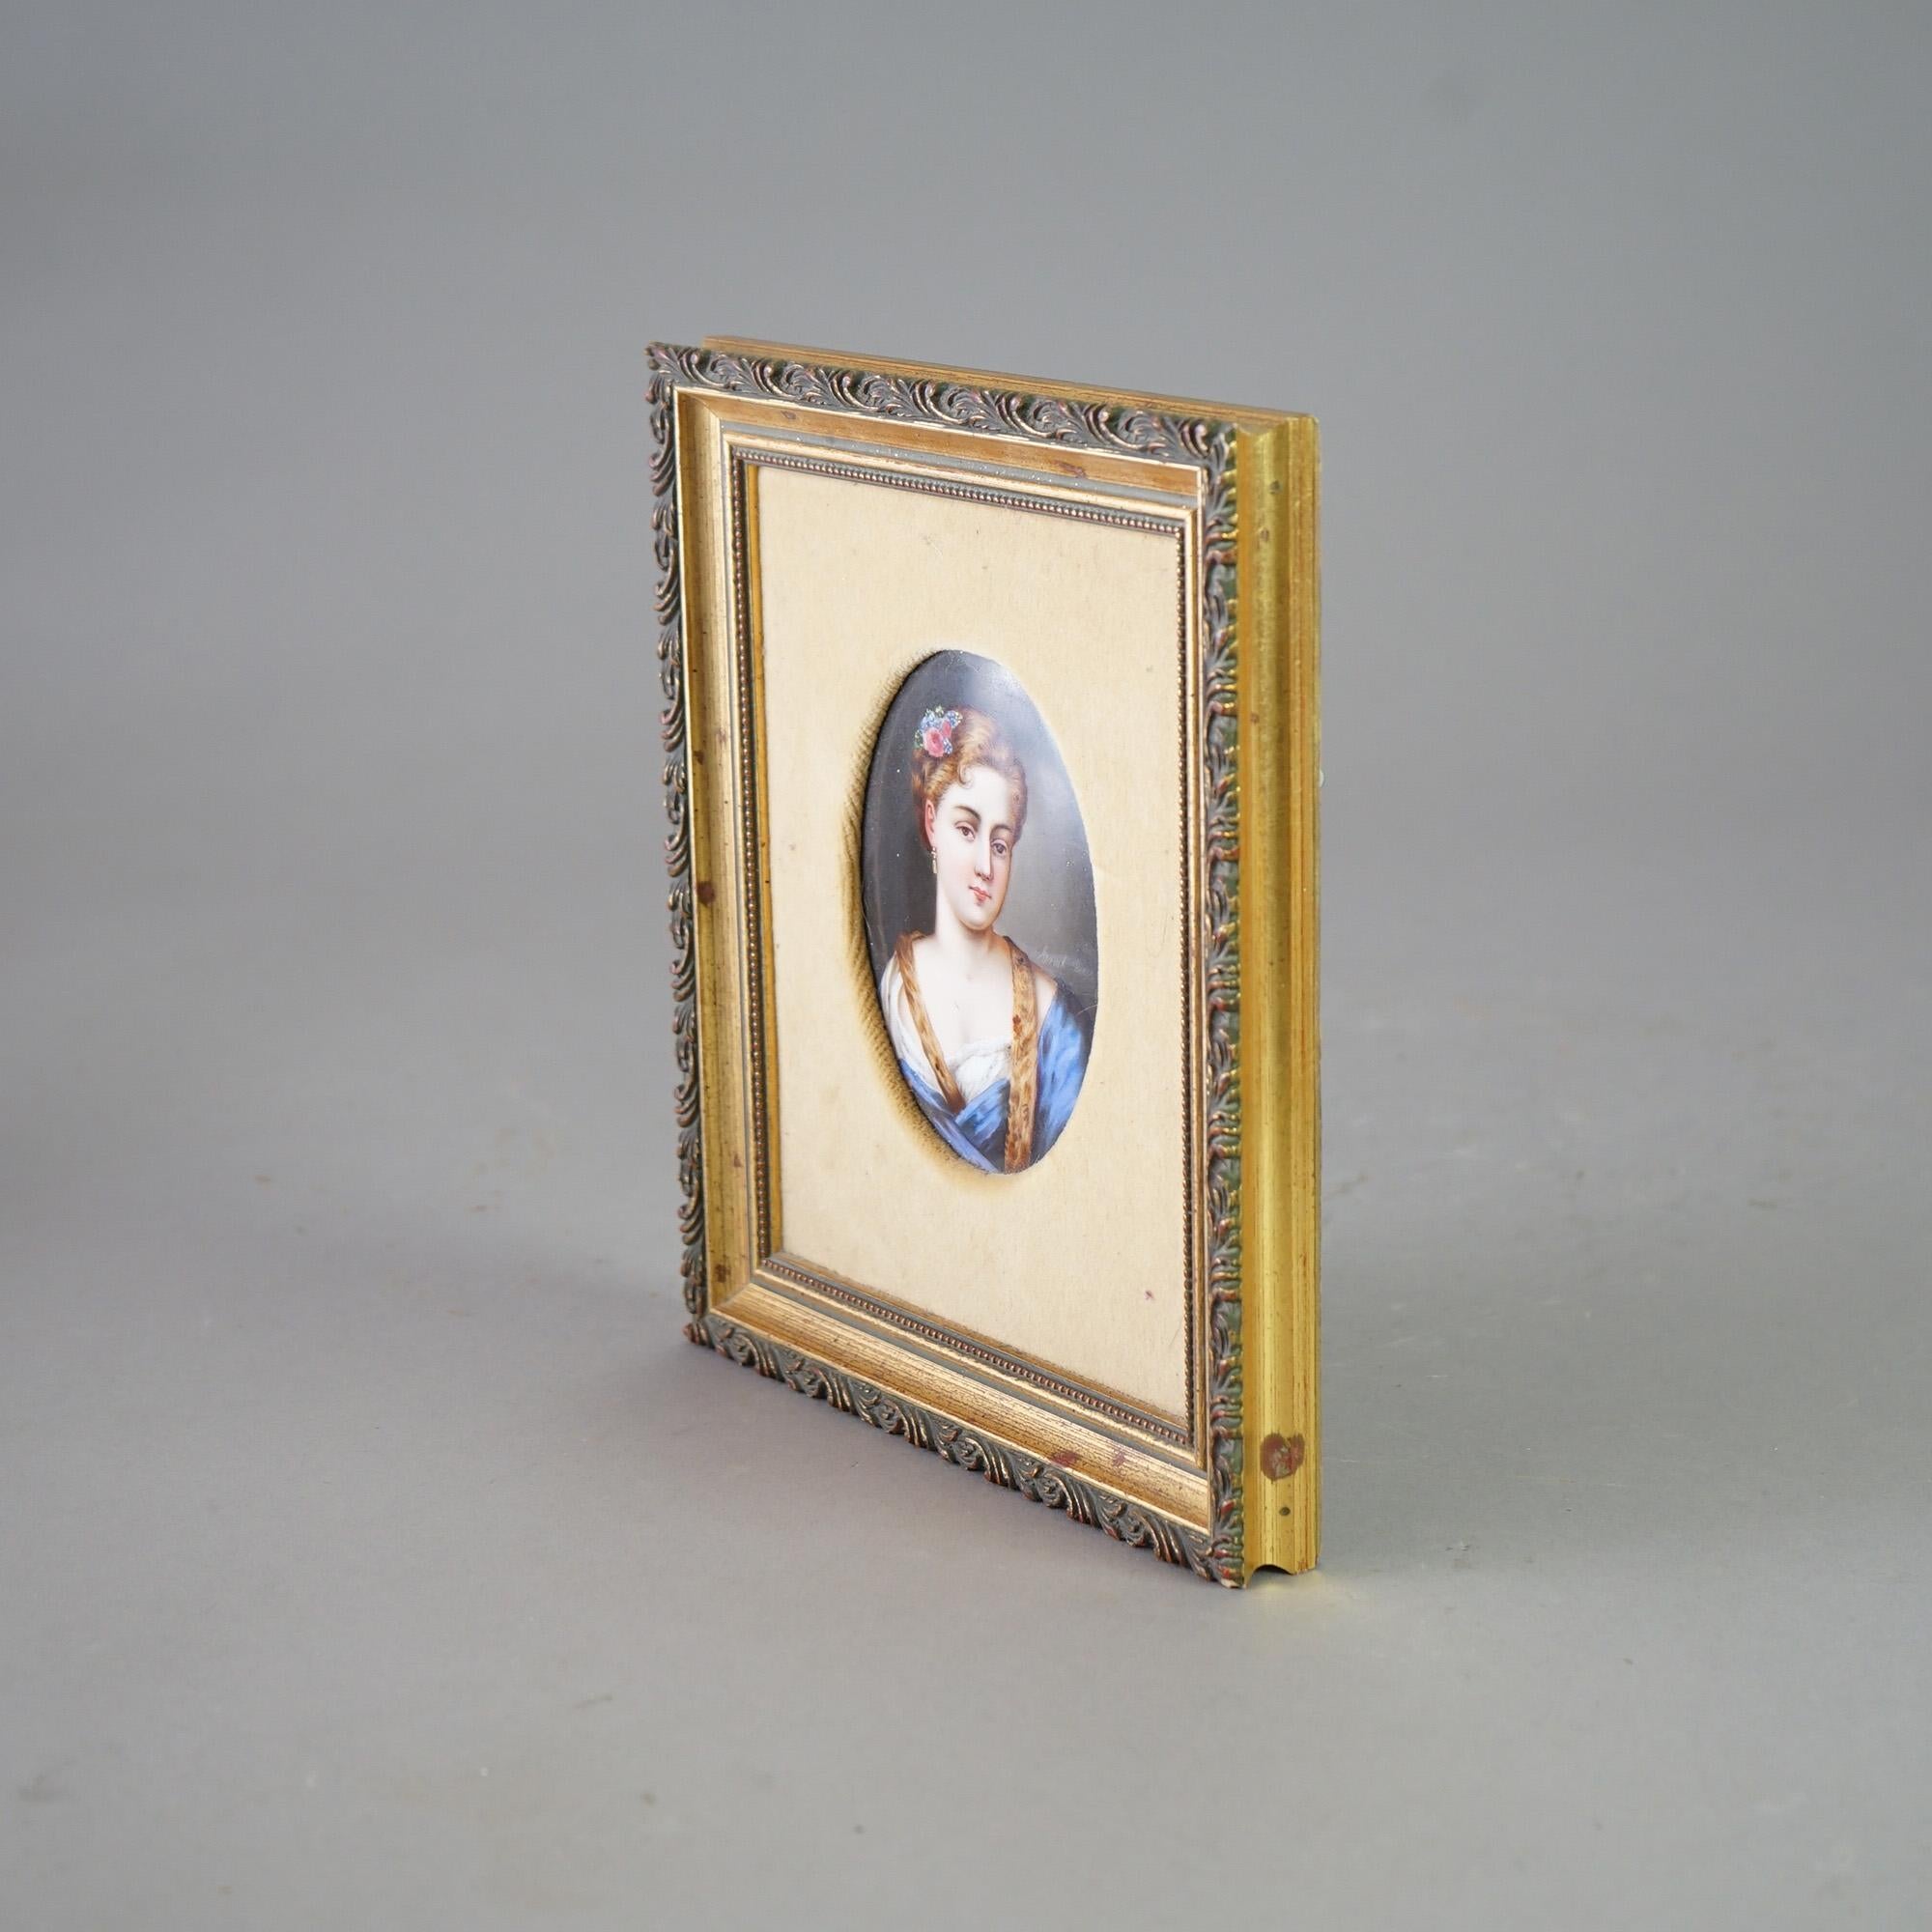 Eine antike Plakette in der Art von KPM bietet das handgemalte Porträt einer jungen Frau auf Porzellan, sitzend in einem Rahmen aus Goldholz, 19.

Maße: 9,5''H x 8''B x 1,25''D